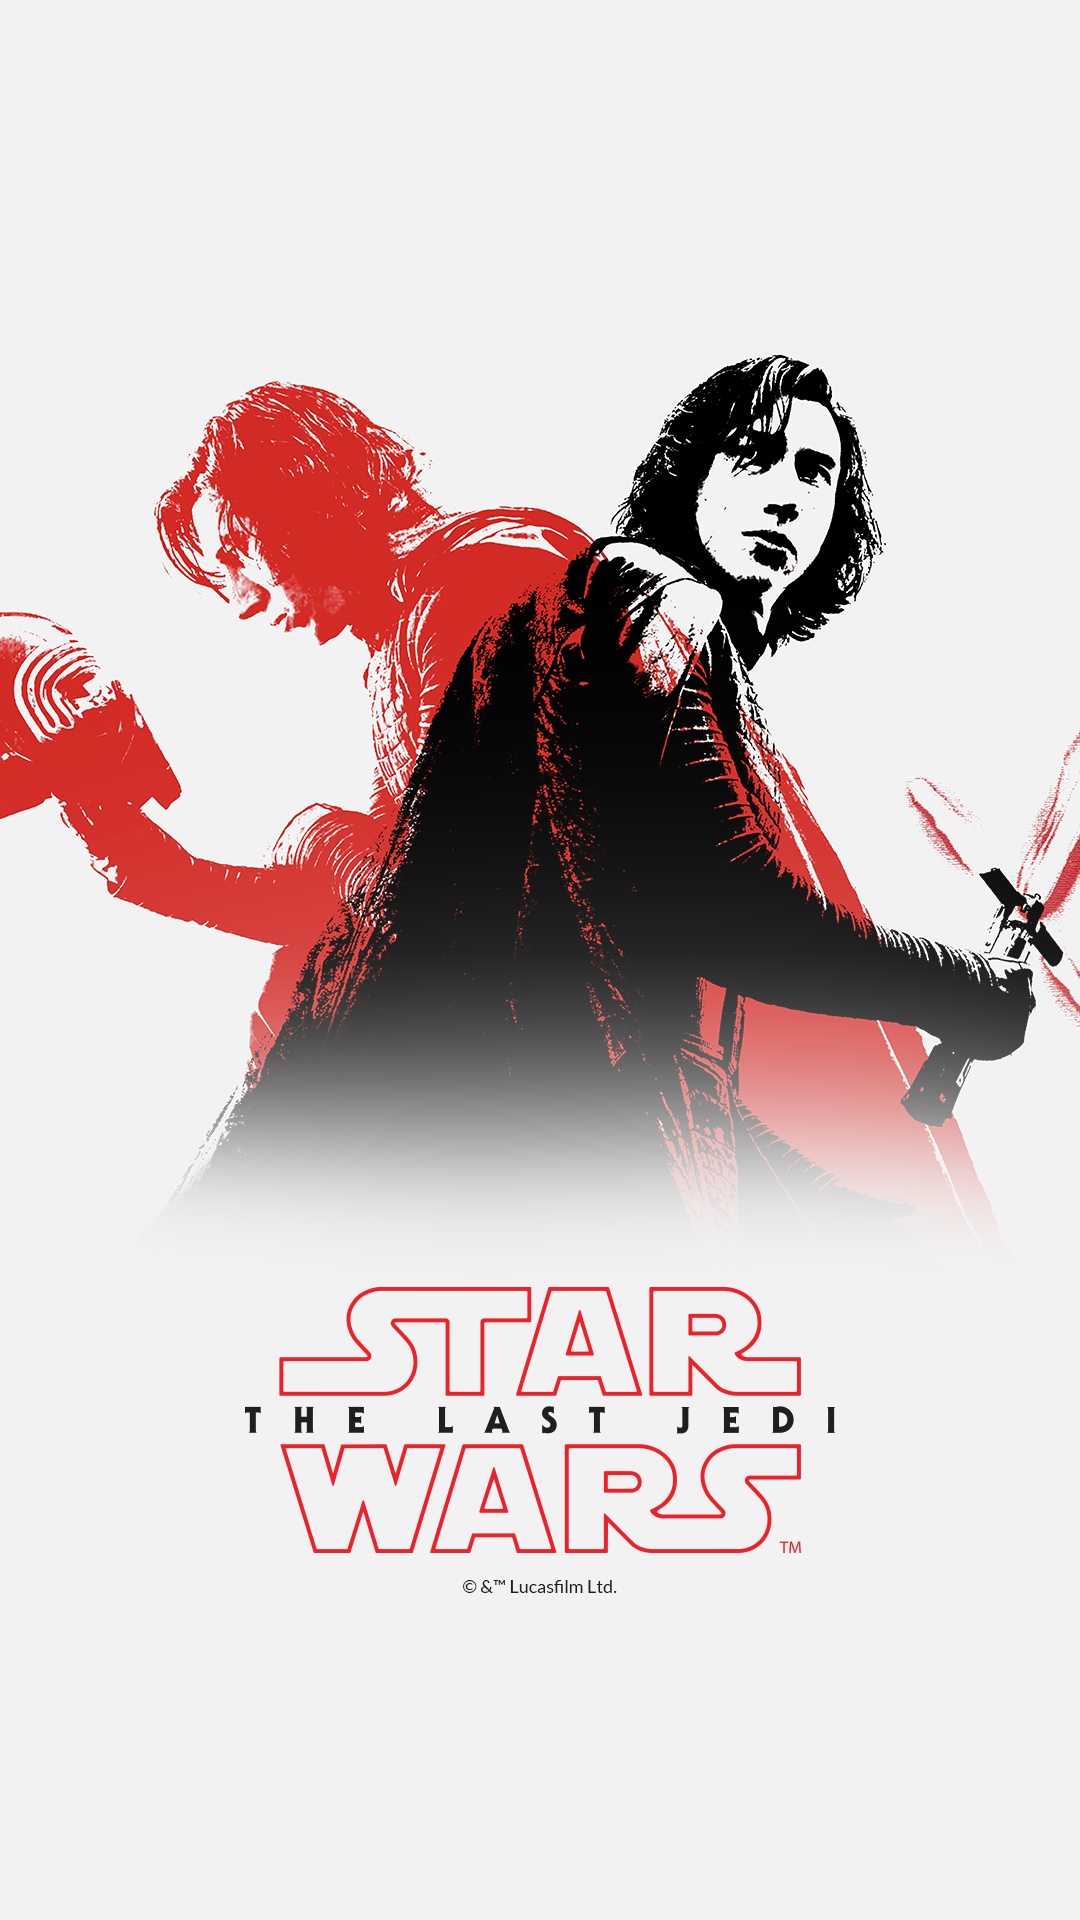 Star Wars: The Last Jedi 4K wallpaper download